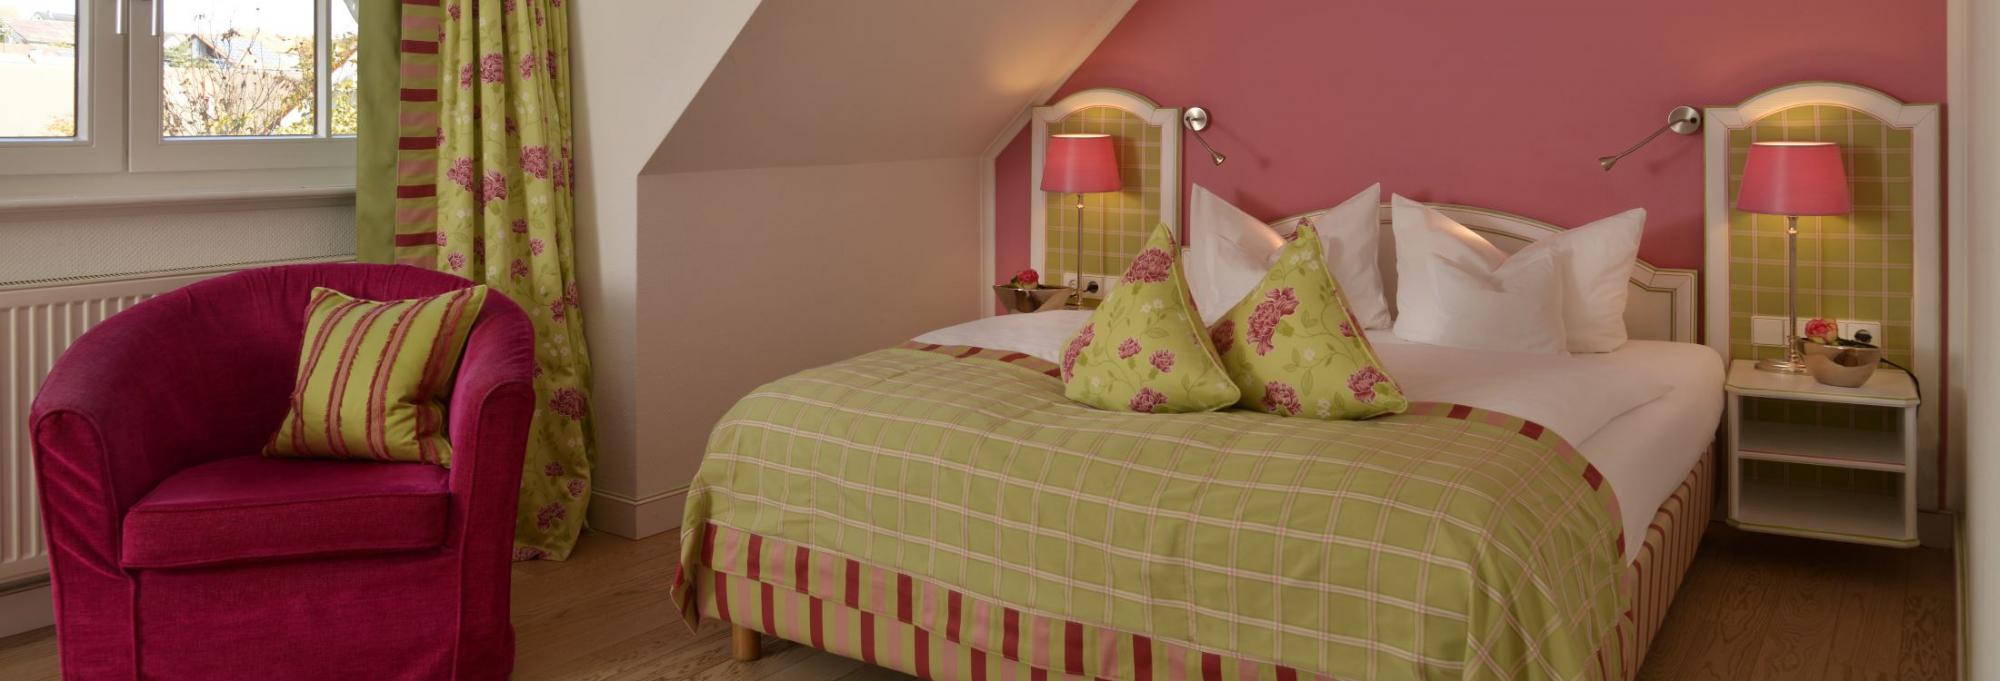 Wiesenberg Junior Suite with Queen-Size Bed